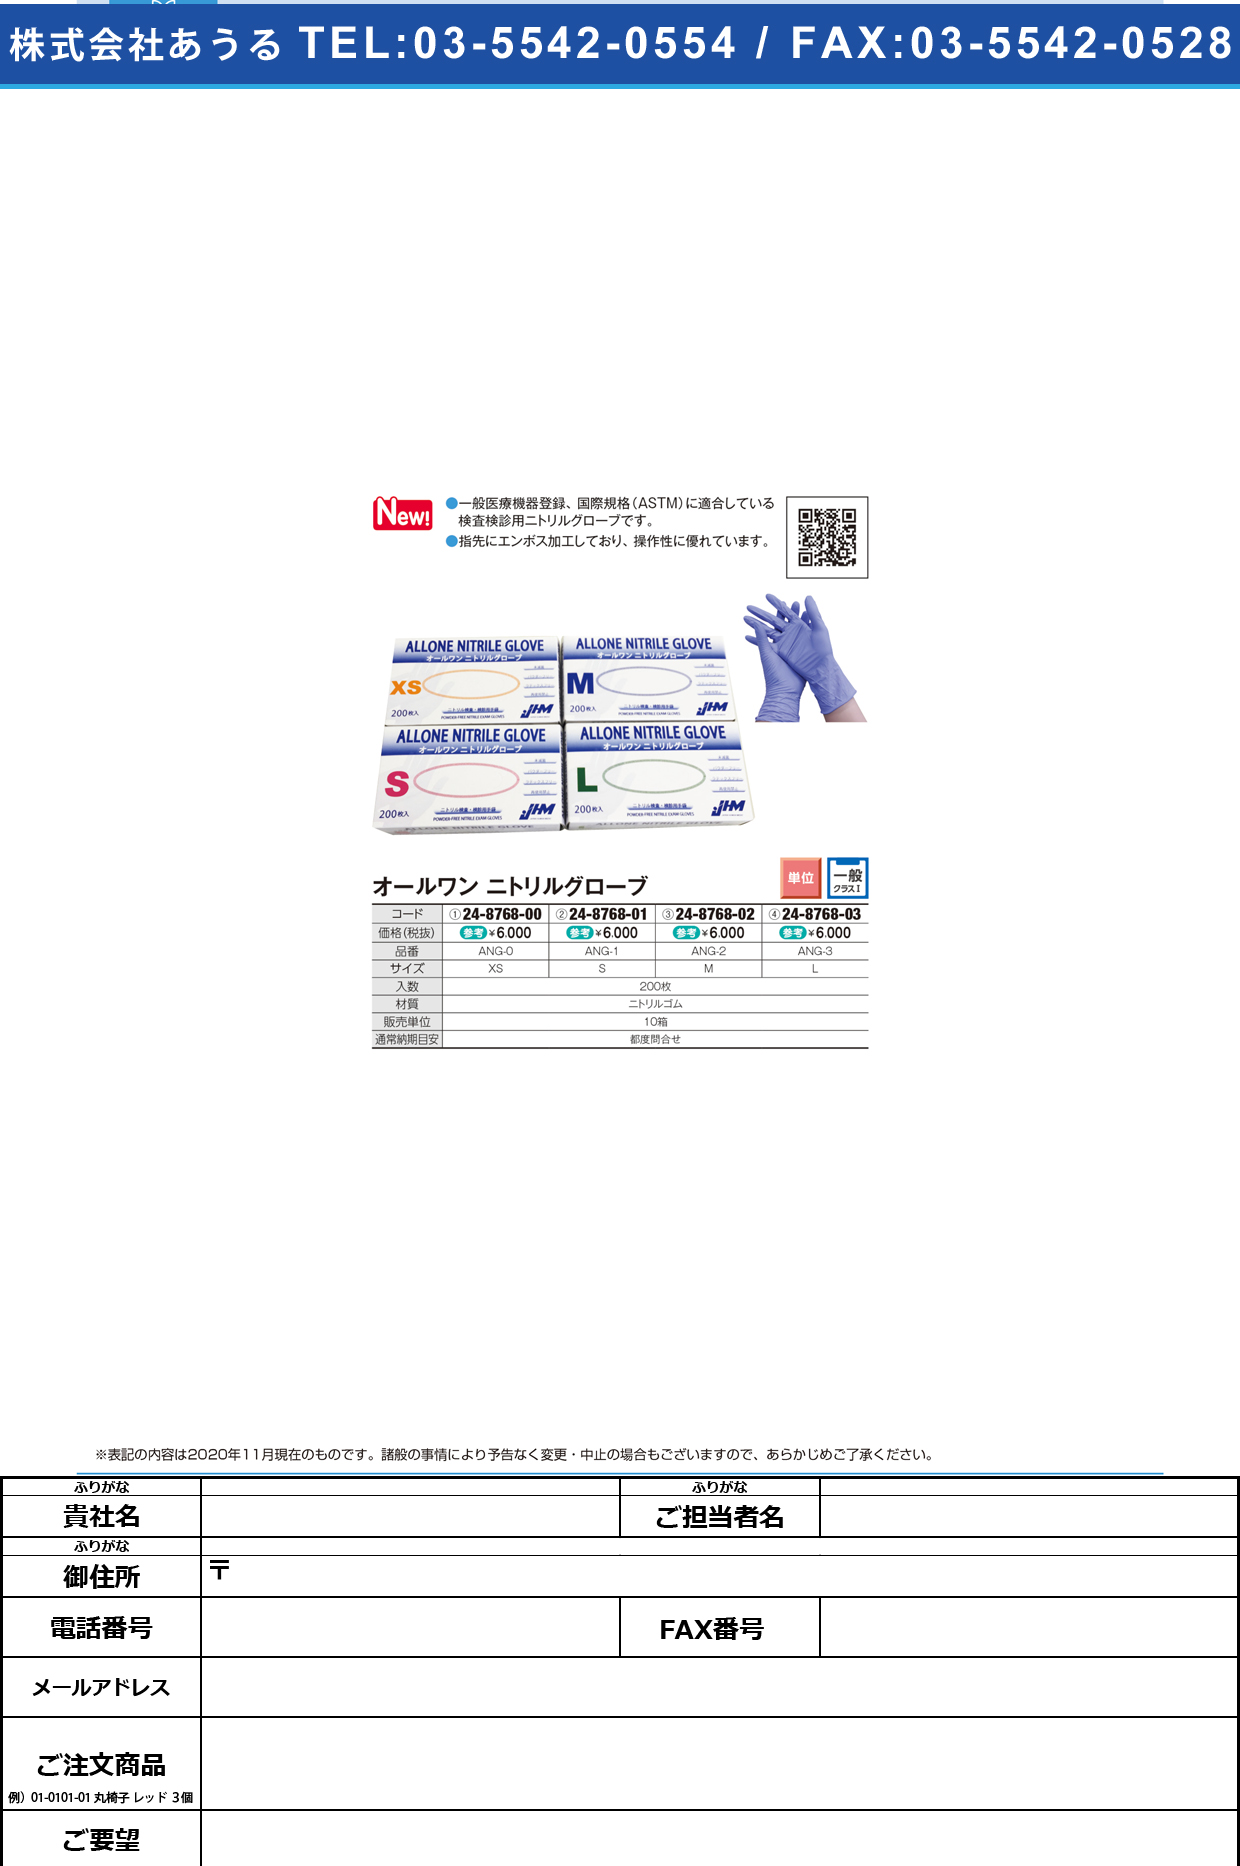 オールワンニトリルグローブ ANG-1(Sサイズ)200マイANG-1(Sｻｲｽﾞ)200ﾏｲ(24-8768-01)【日本ヒューマンメディク】(販売単位:10)